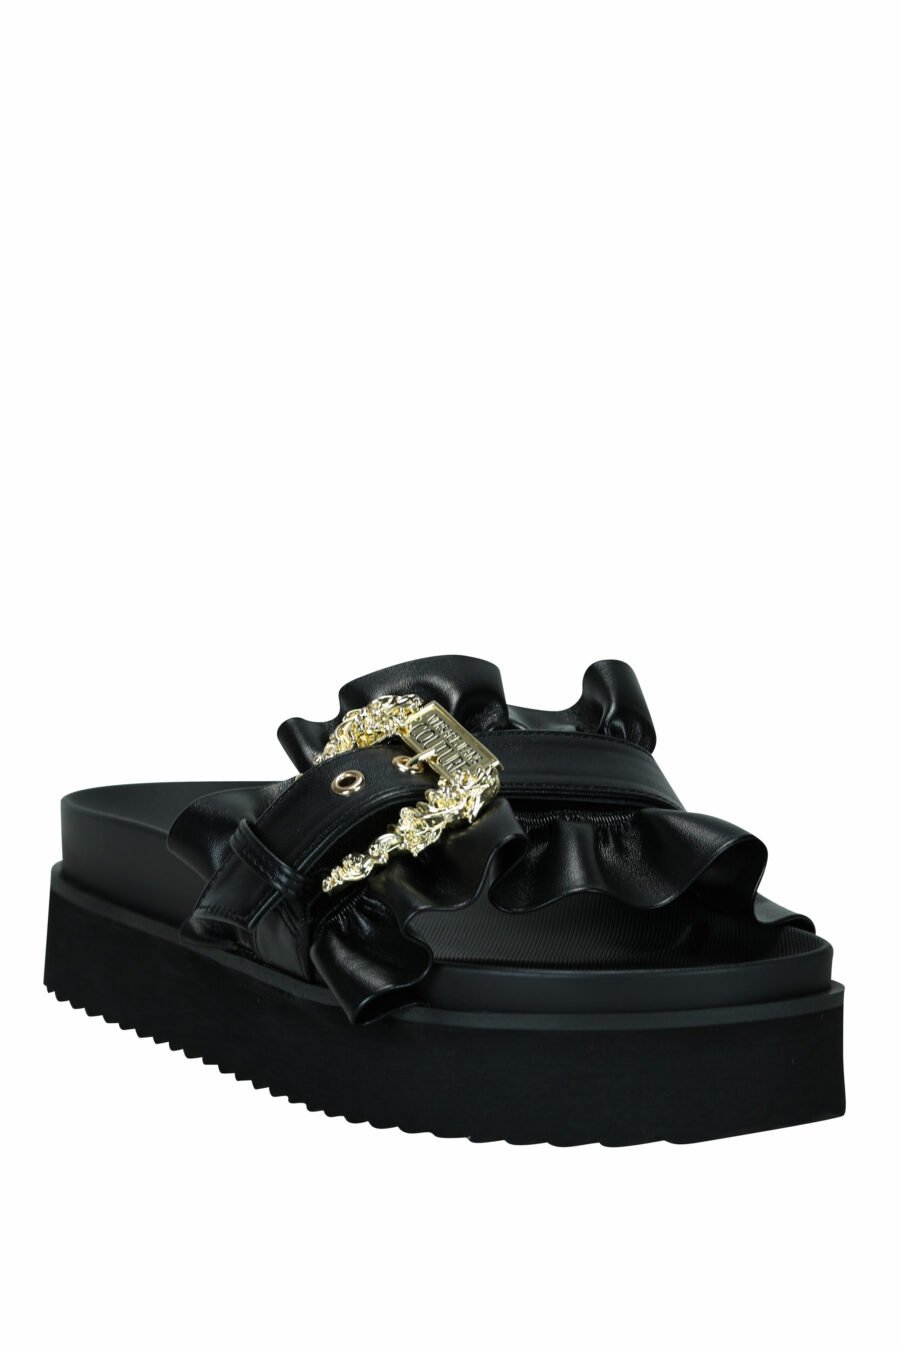 Sandalias negras con plataforma y hebilla barroca dorada - 8052019607192 3